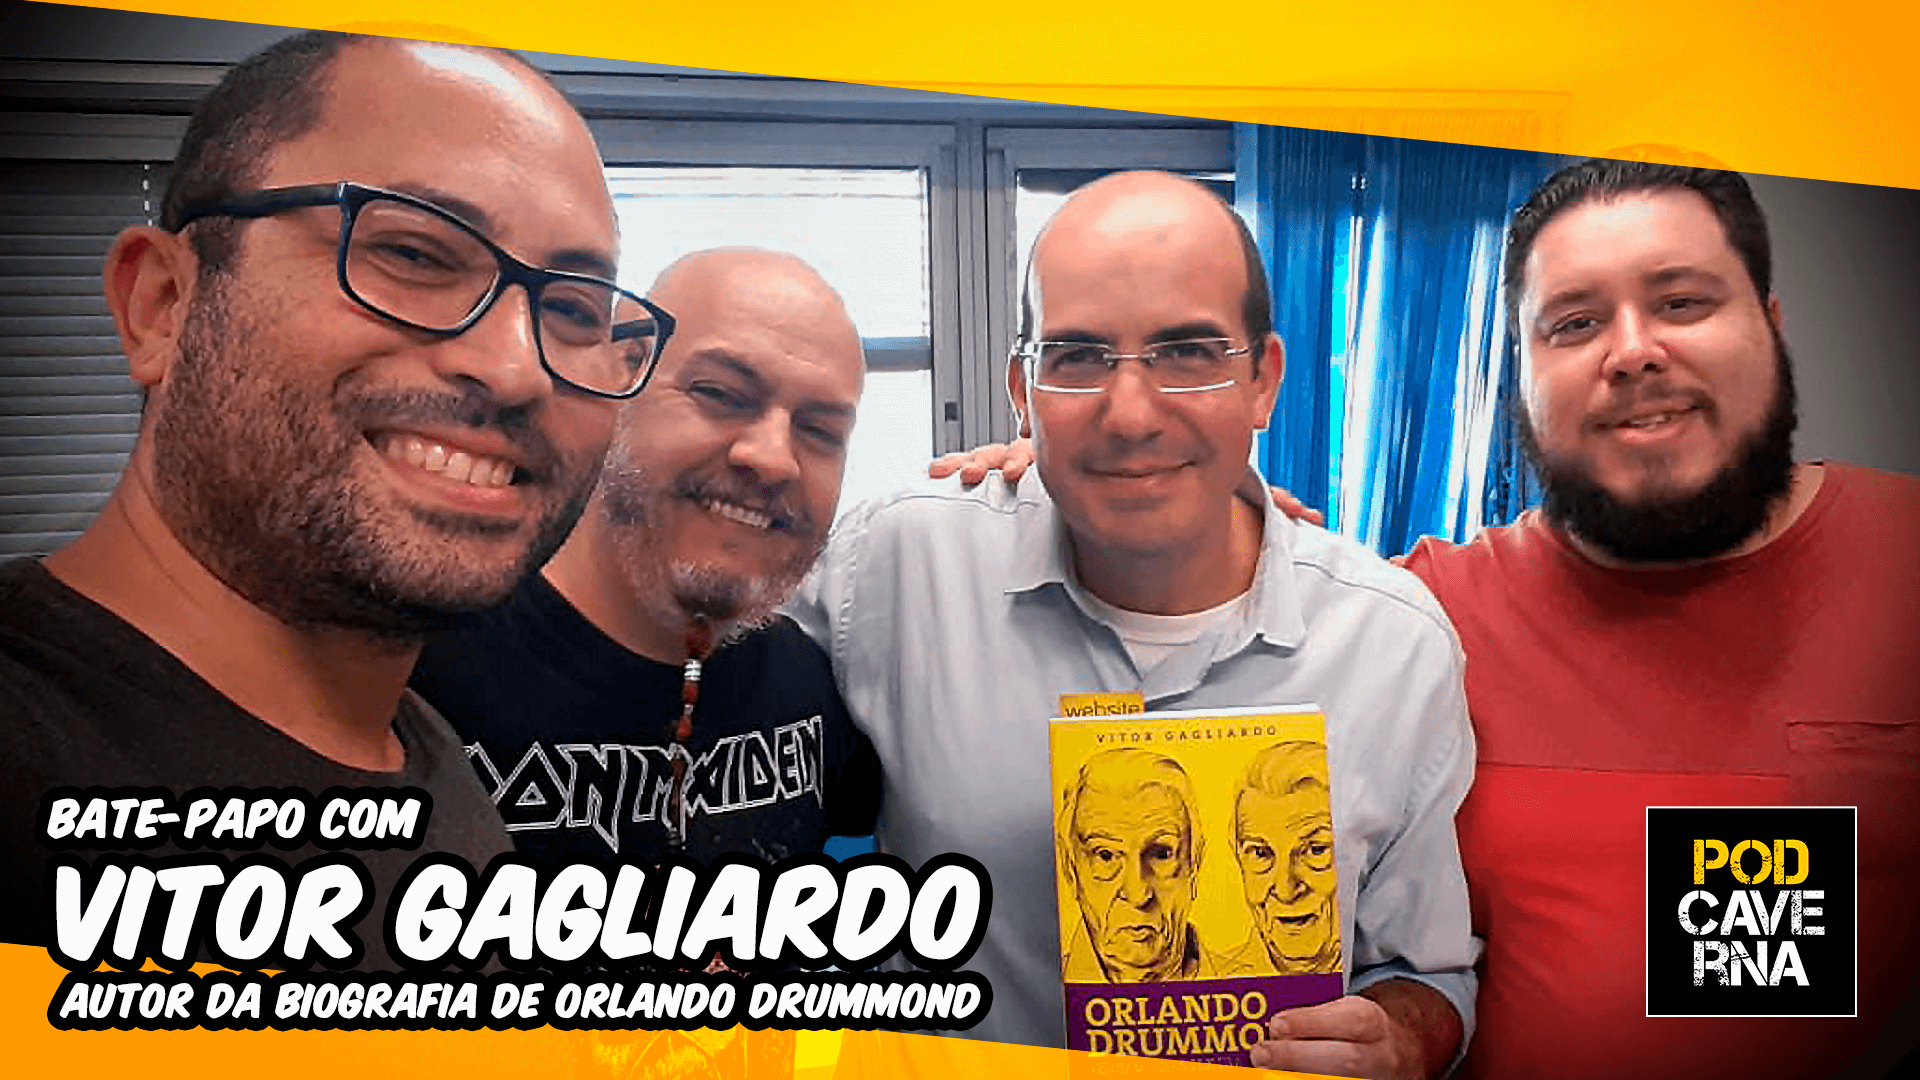 PodCaverna com Vitor Gagliardo, autor da biografia "Orlando Drummond - Versão Brasileira"